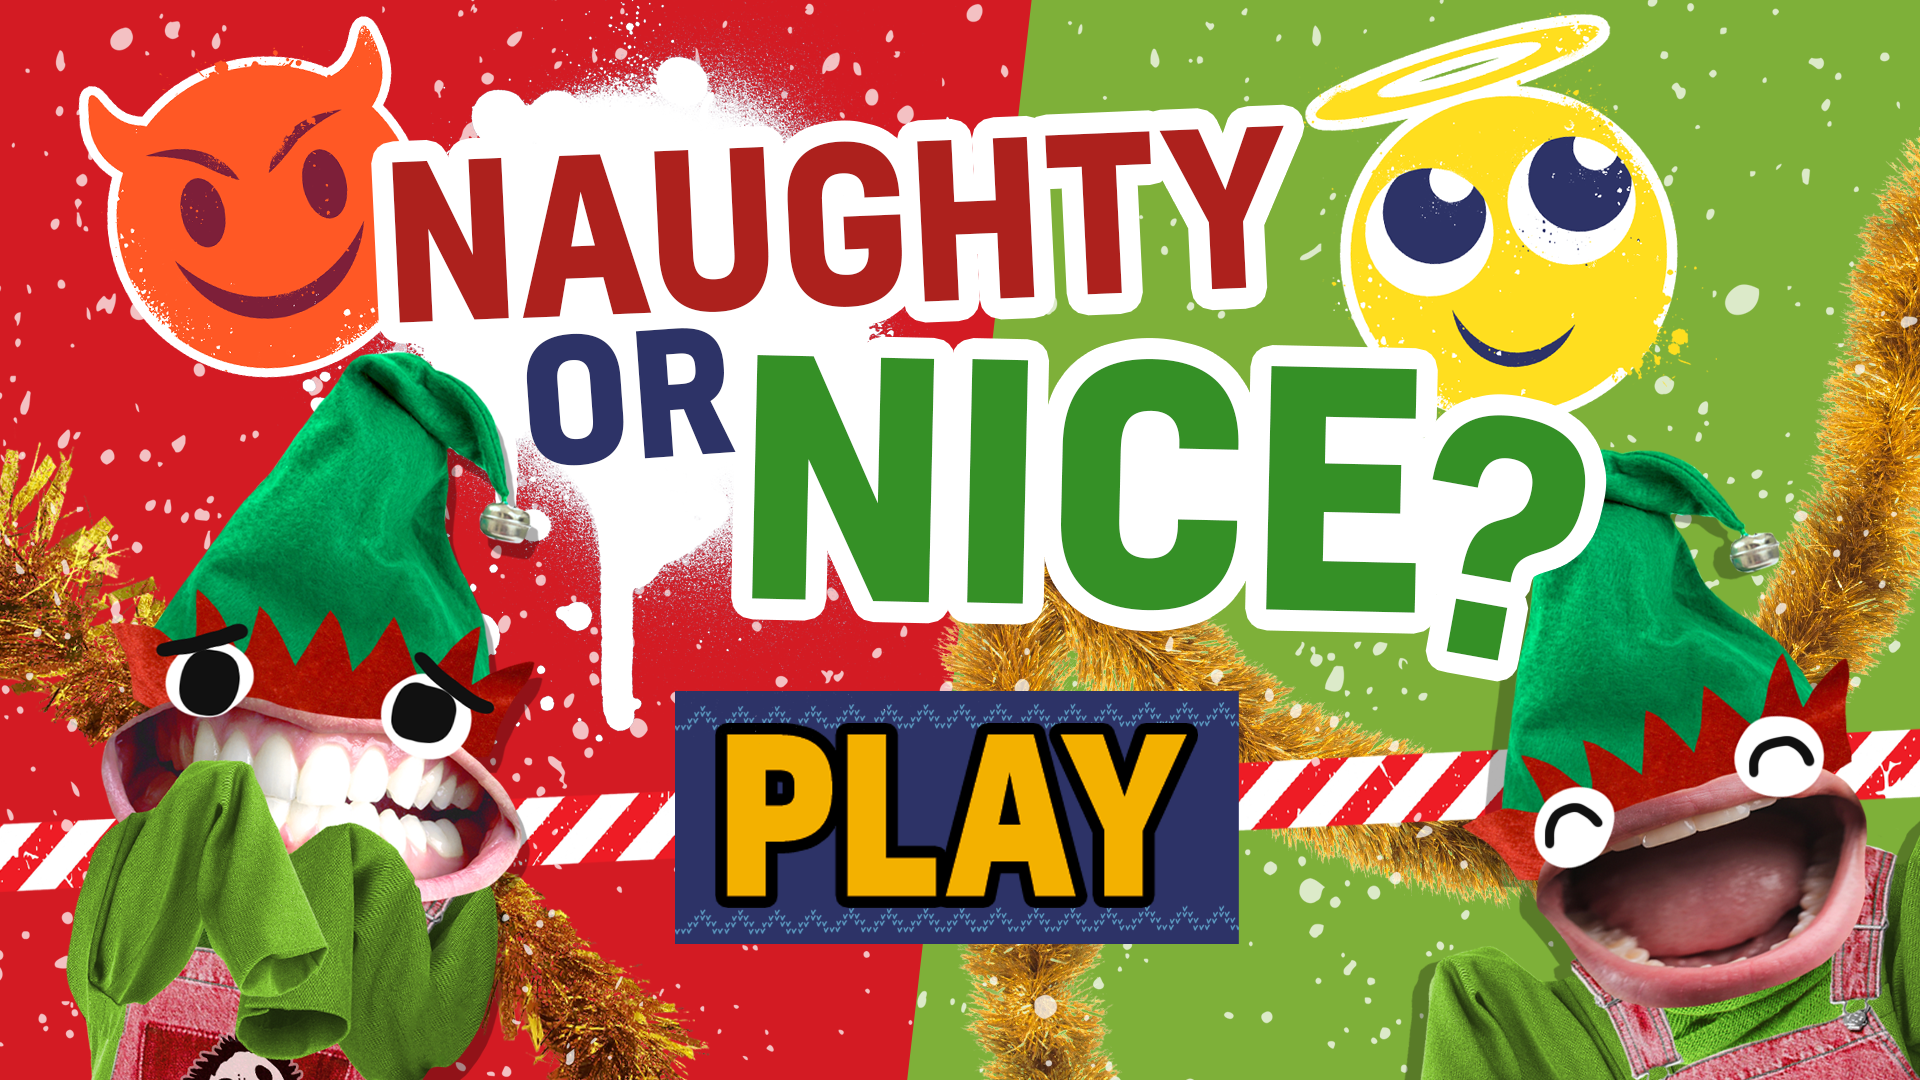 Play: Naughty or Nice?!